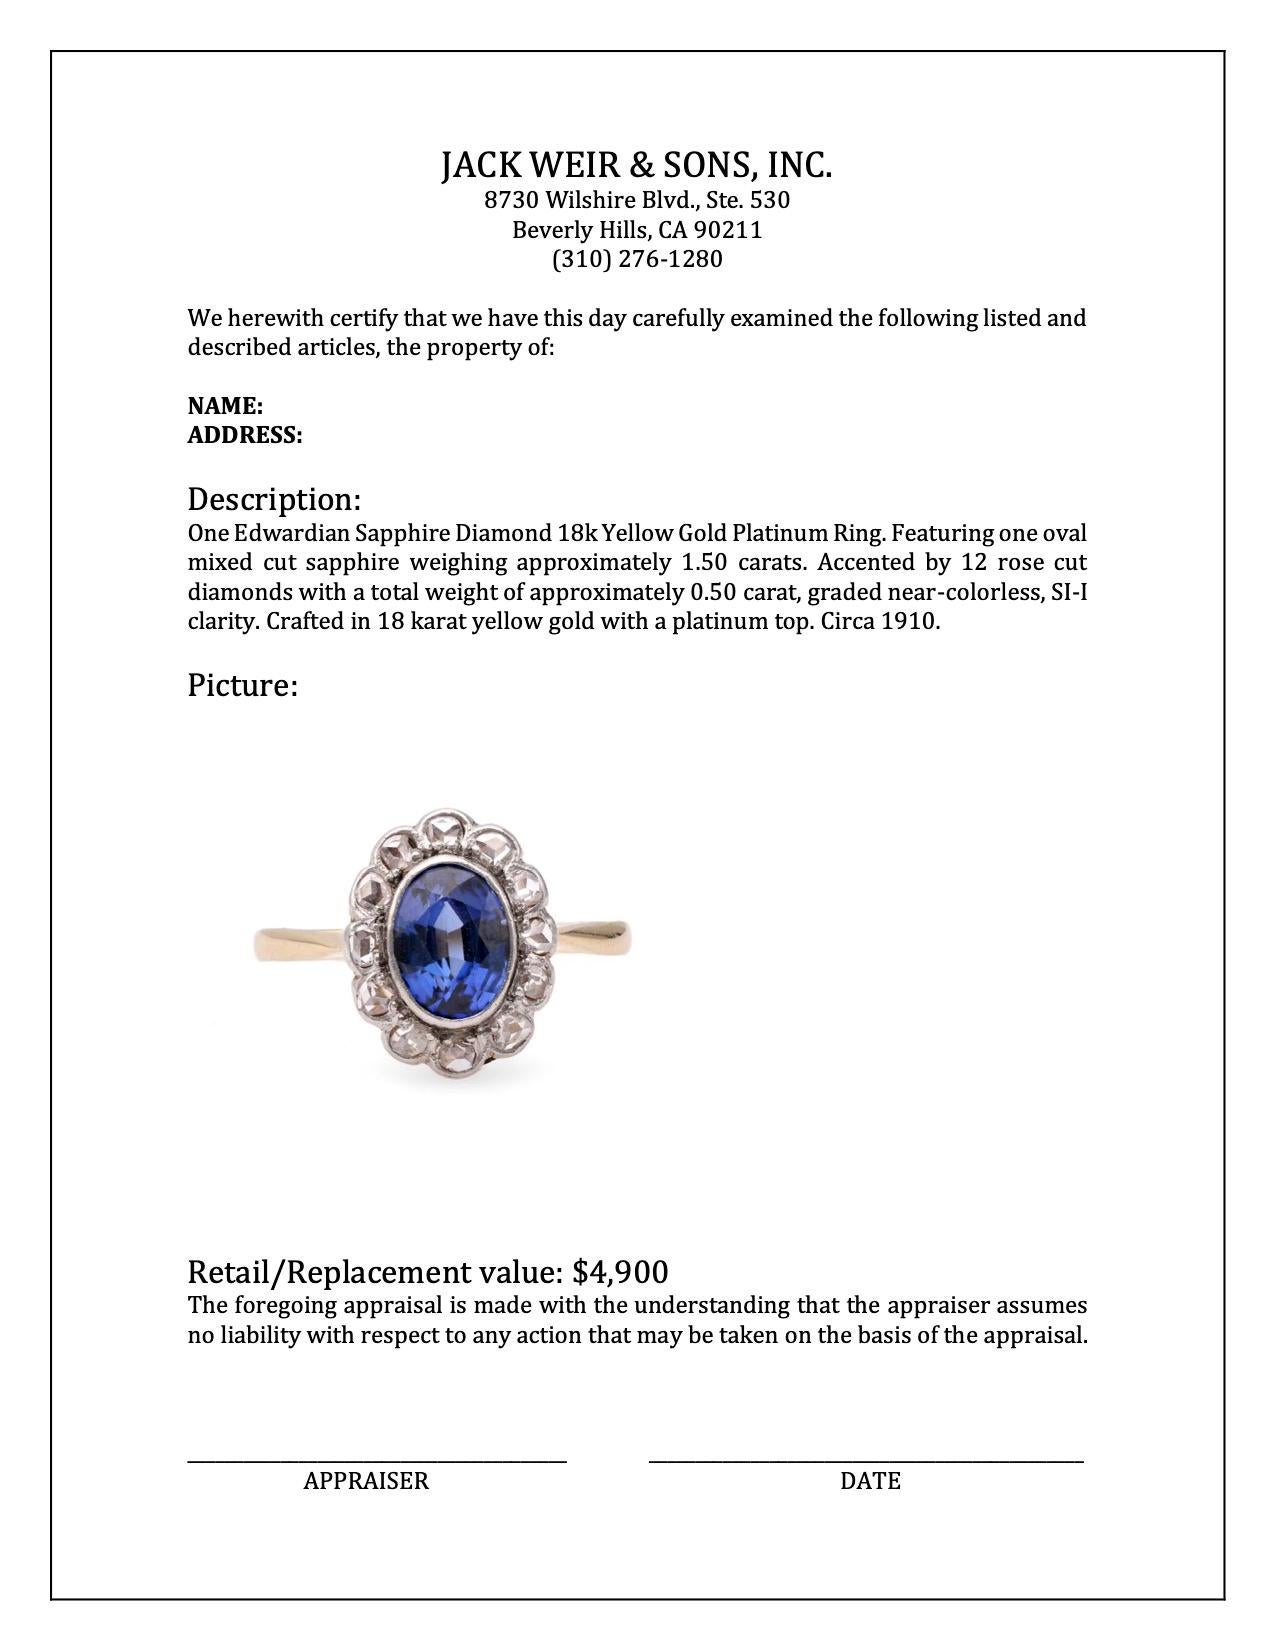 18k Gelbgold Platin-Ring mit edwardianischem Saphir und Diamant für Damen oder Herren im Angebot